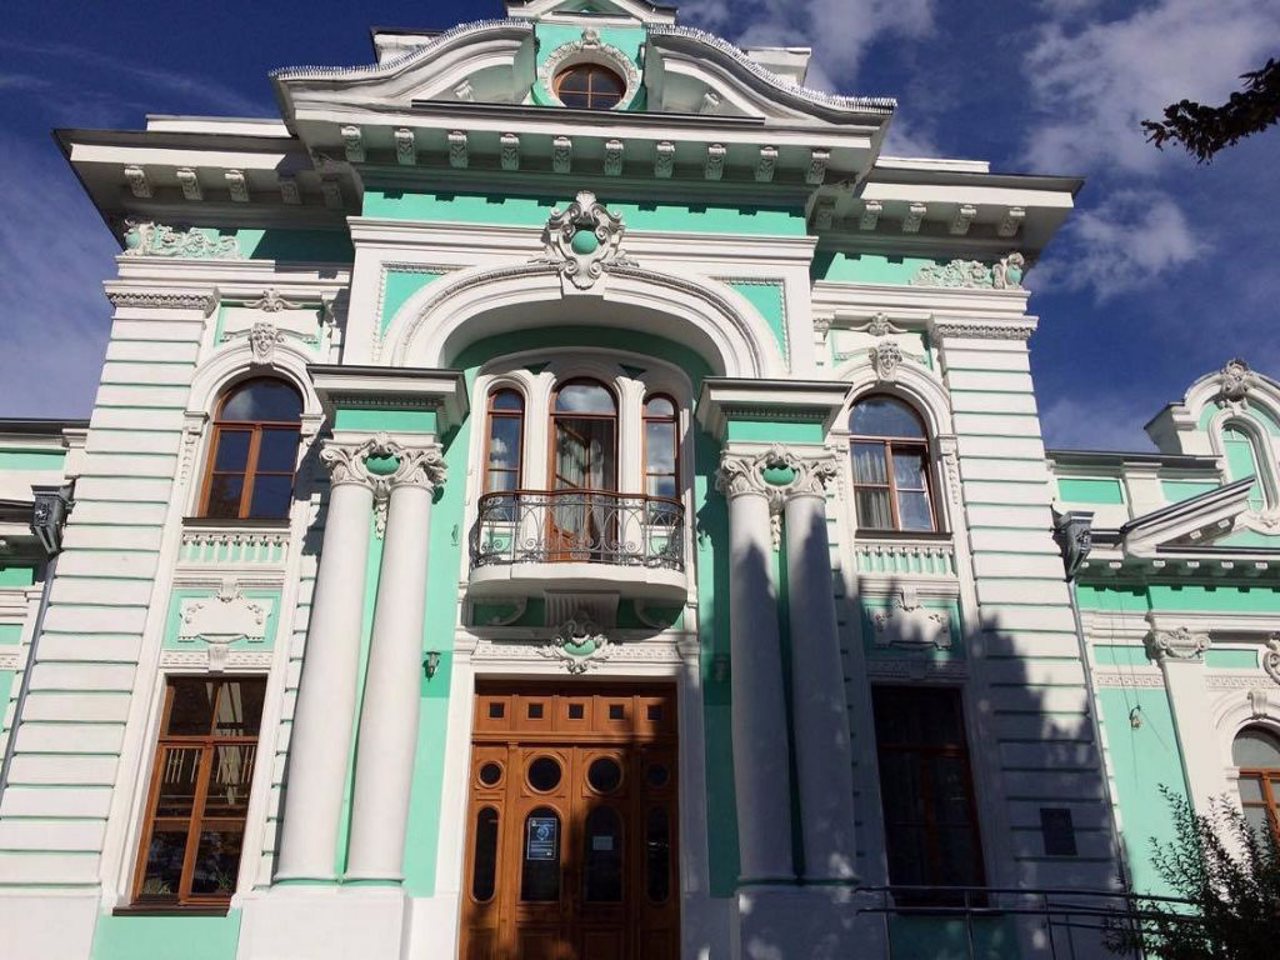 Filipov Mansion (Happiness Palace), Zhytomyr